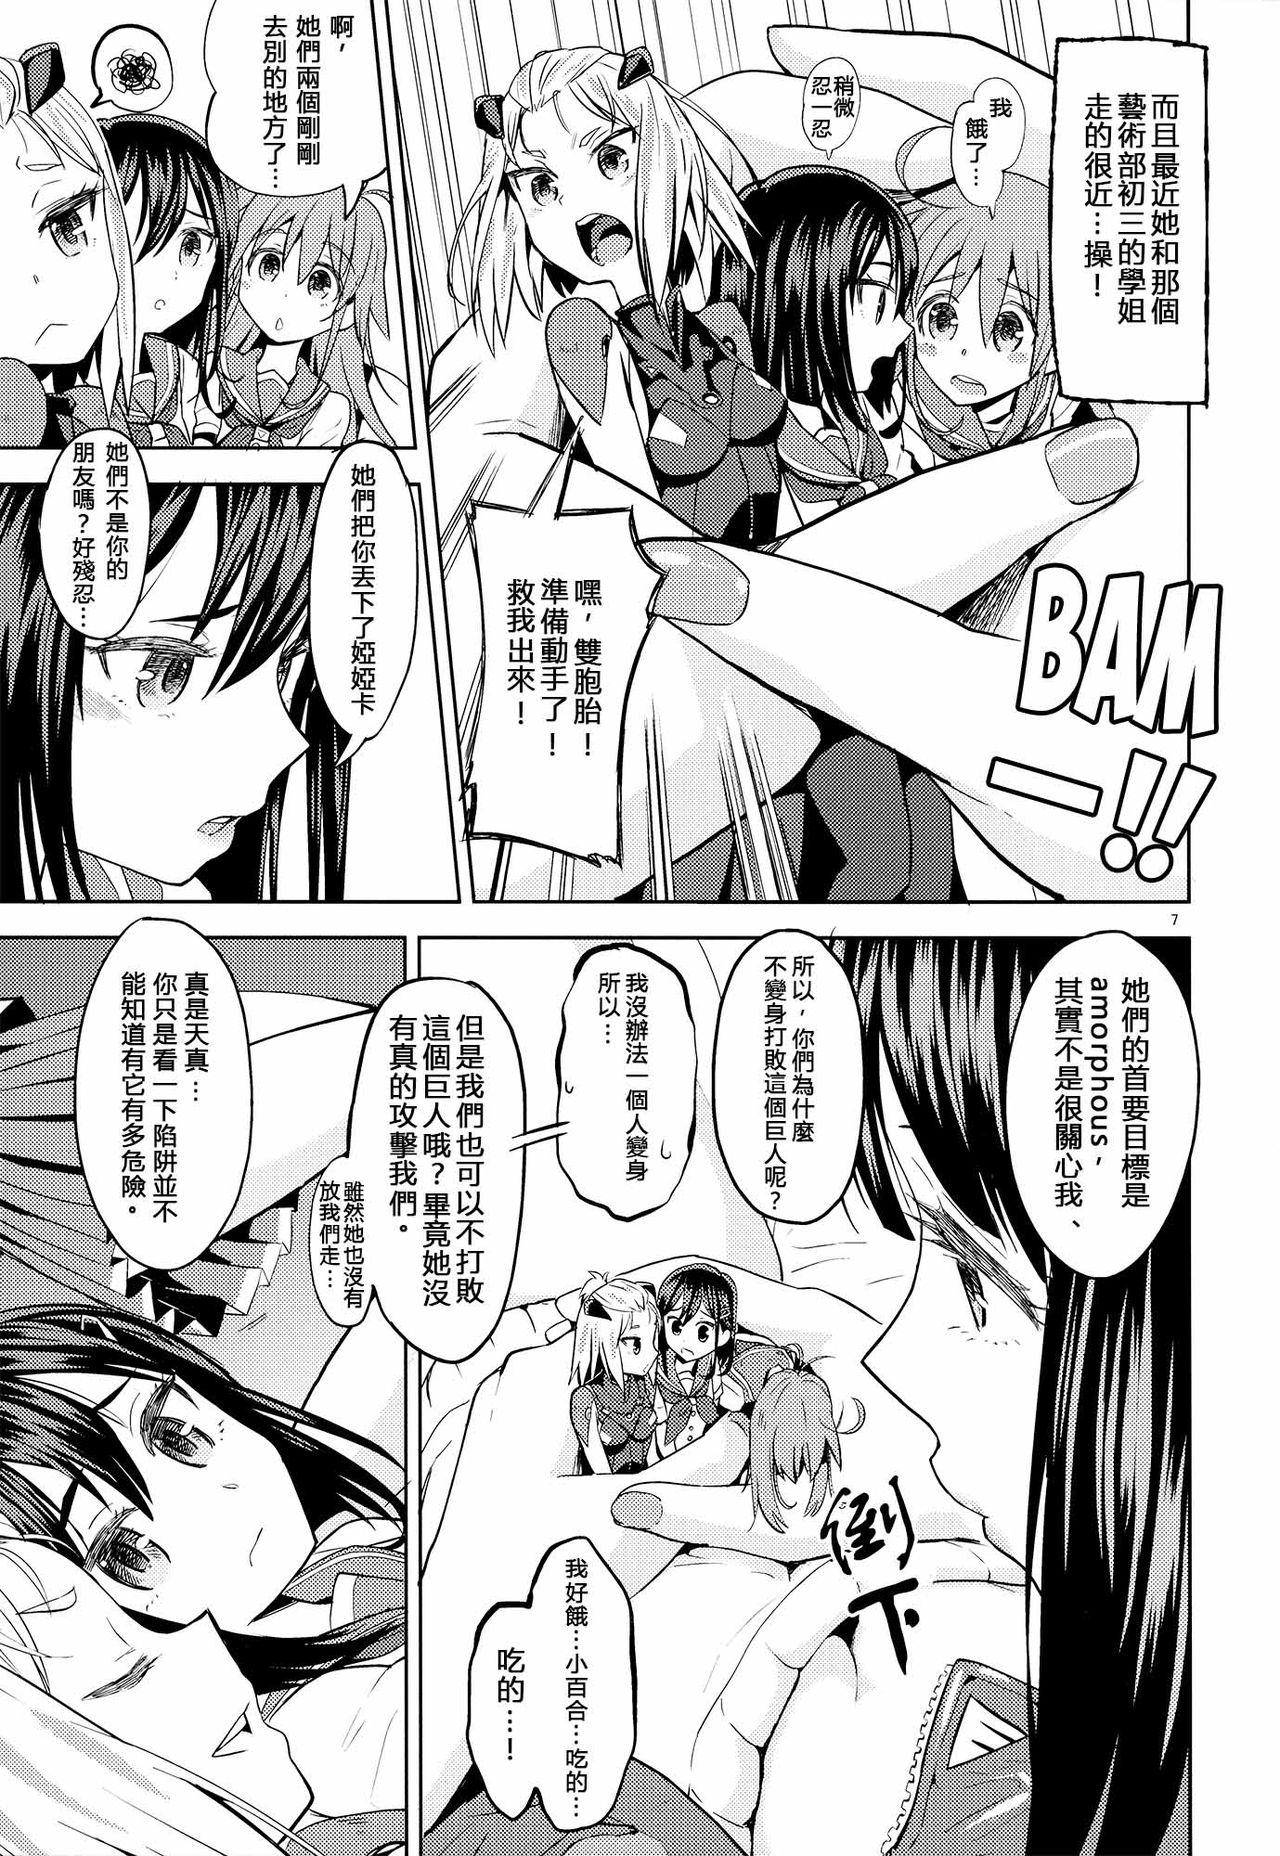 Pay Sore dakara Watashi wa Henshin Dekinai - Flip flappers Hotporn - Page 8